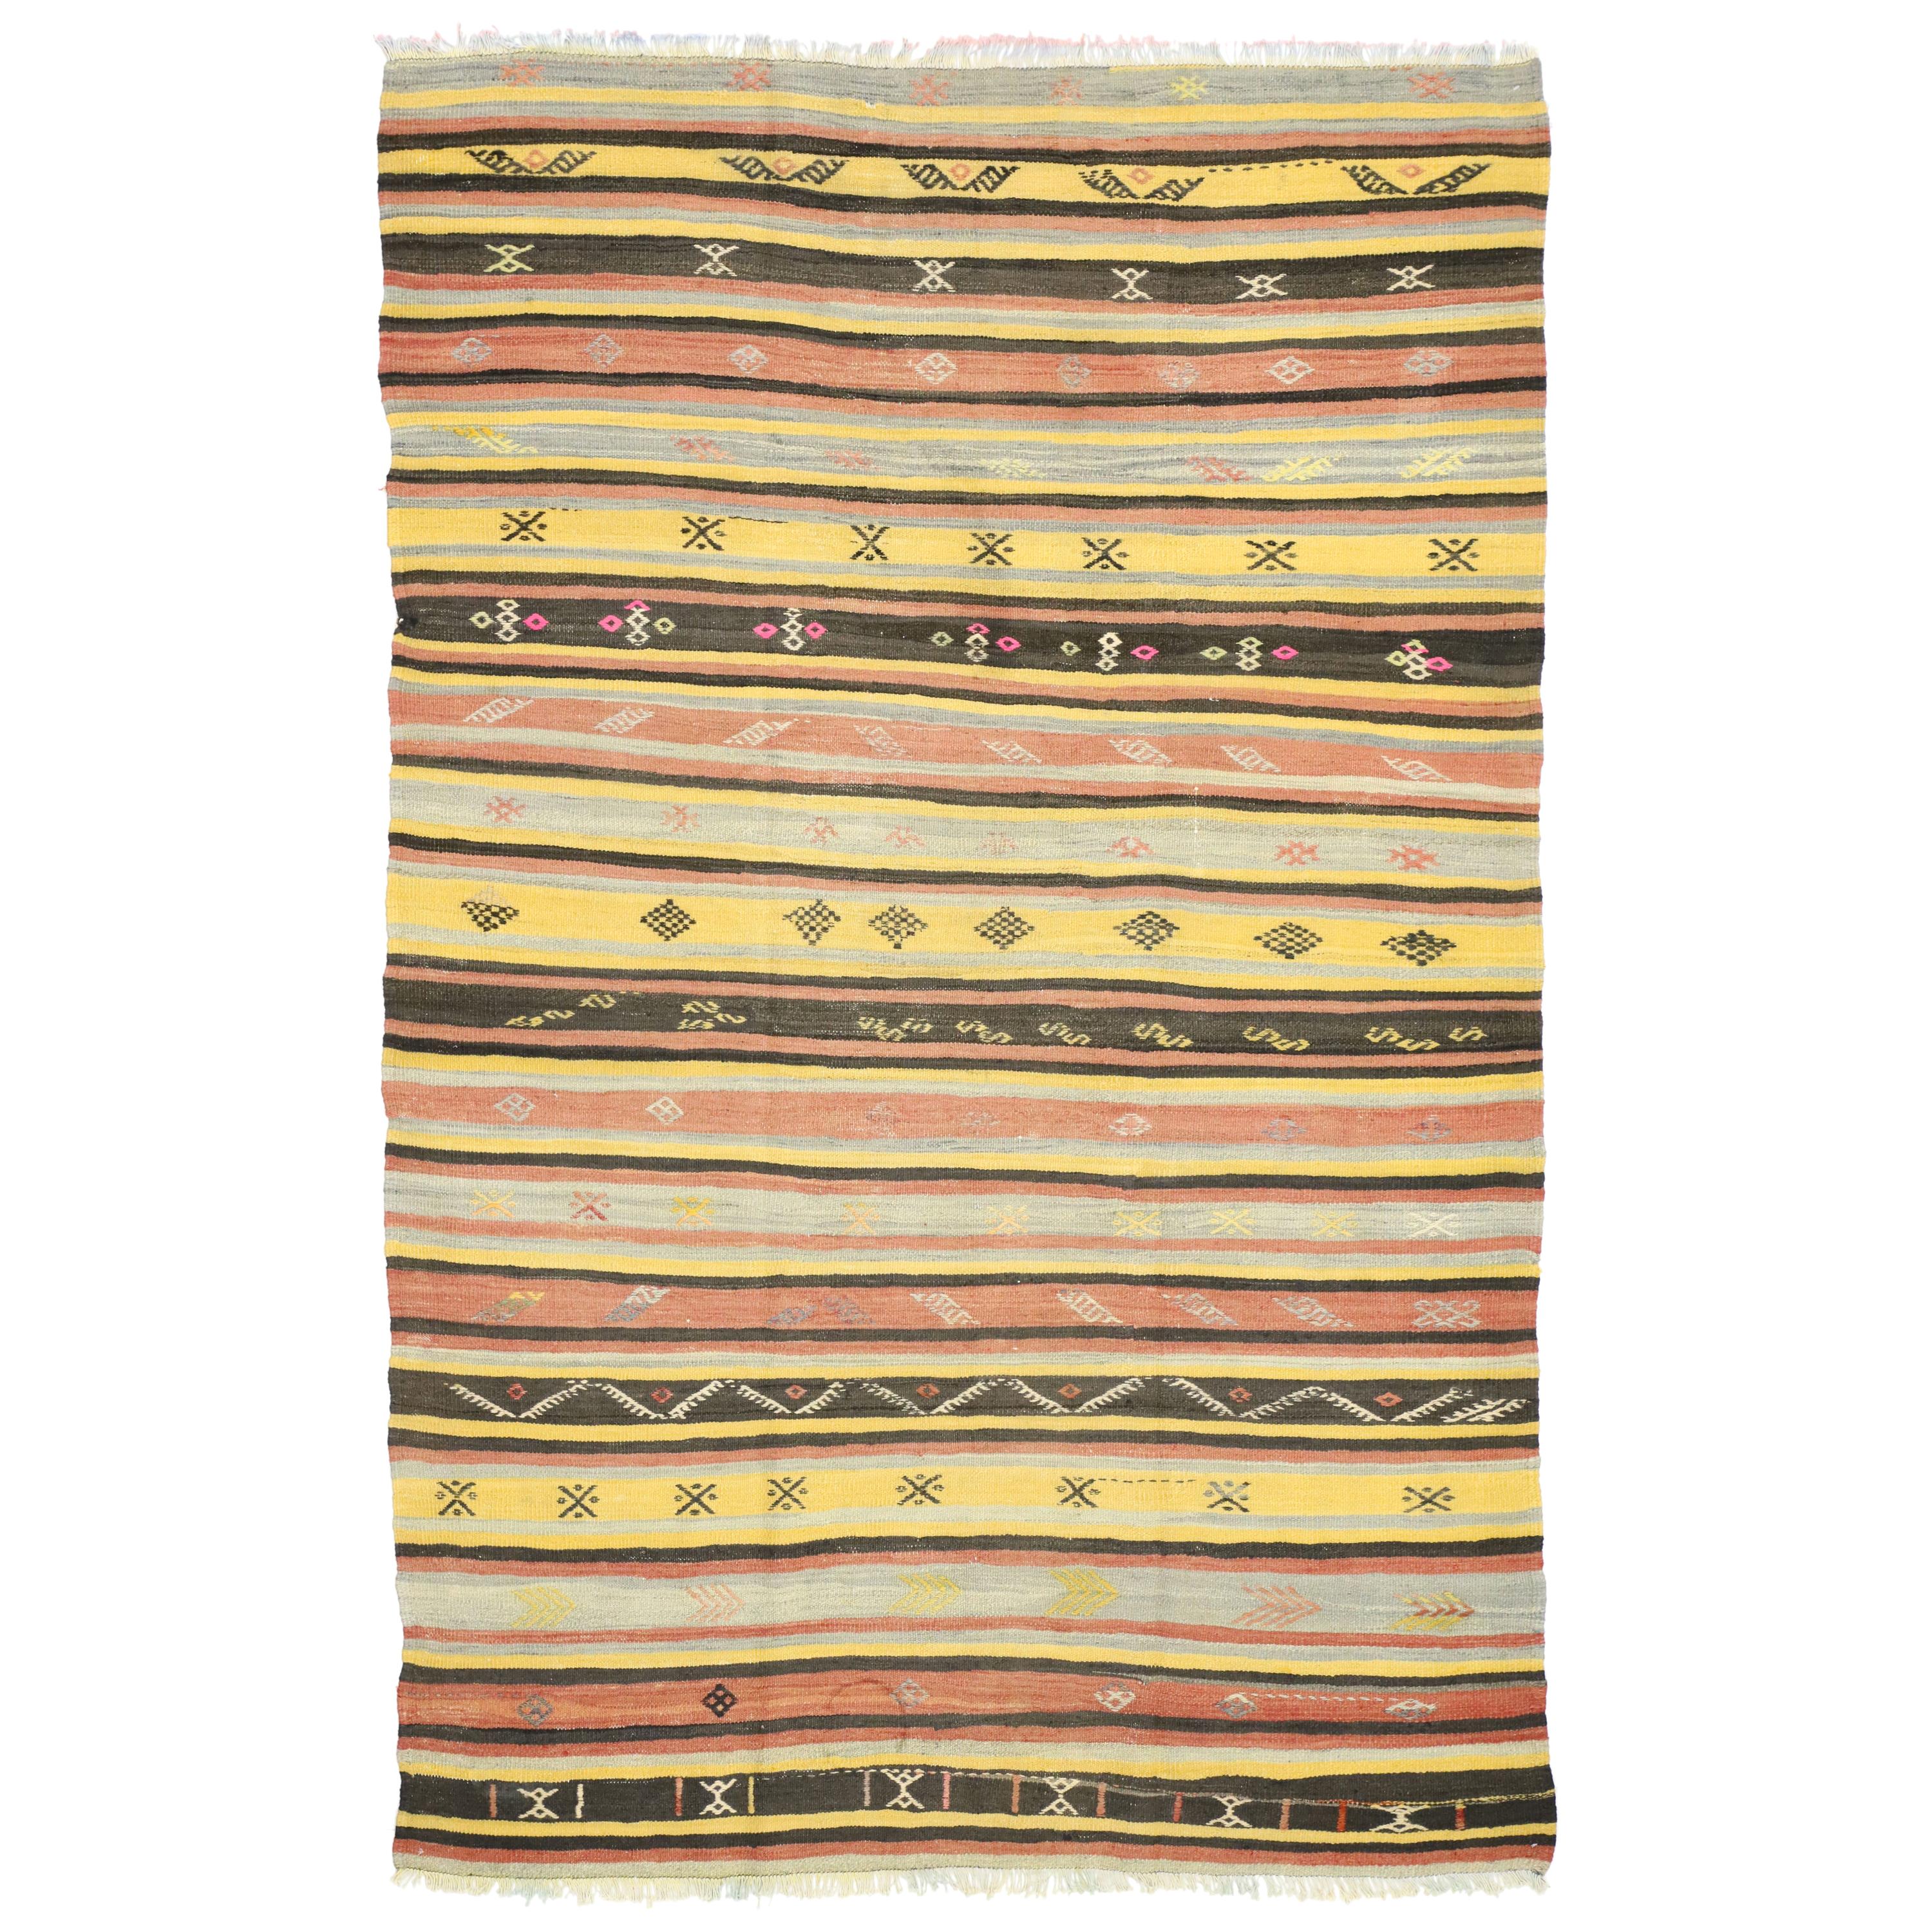 Vintage Turkish Kilim Rug, Flat-Weave Kilim Tribal Rug